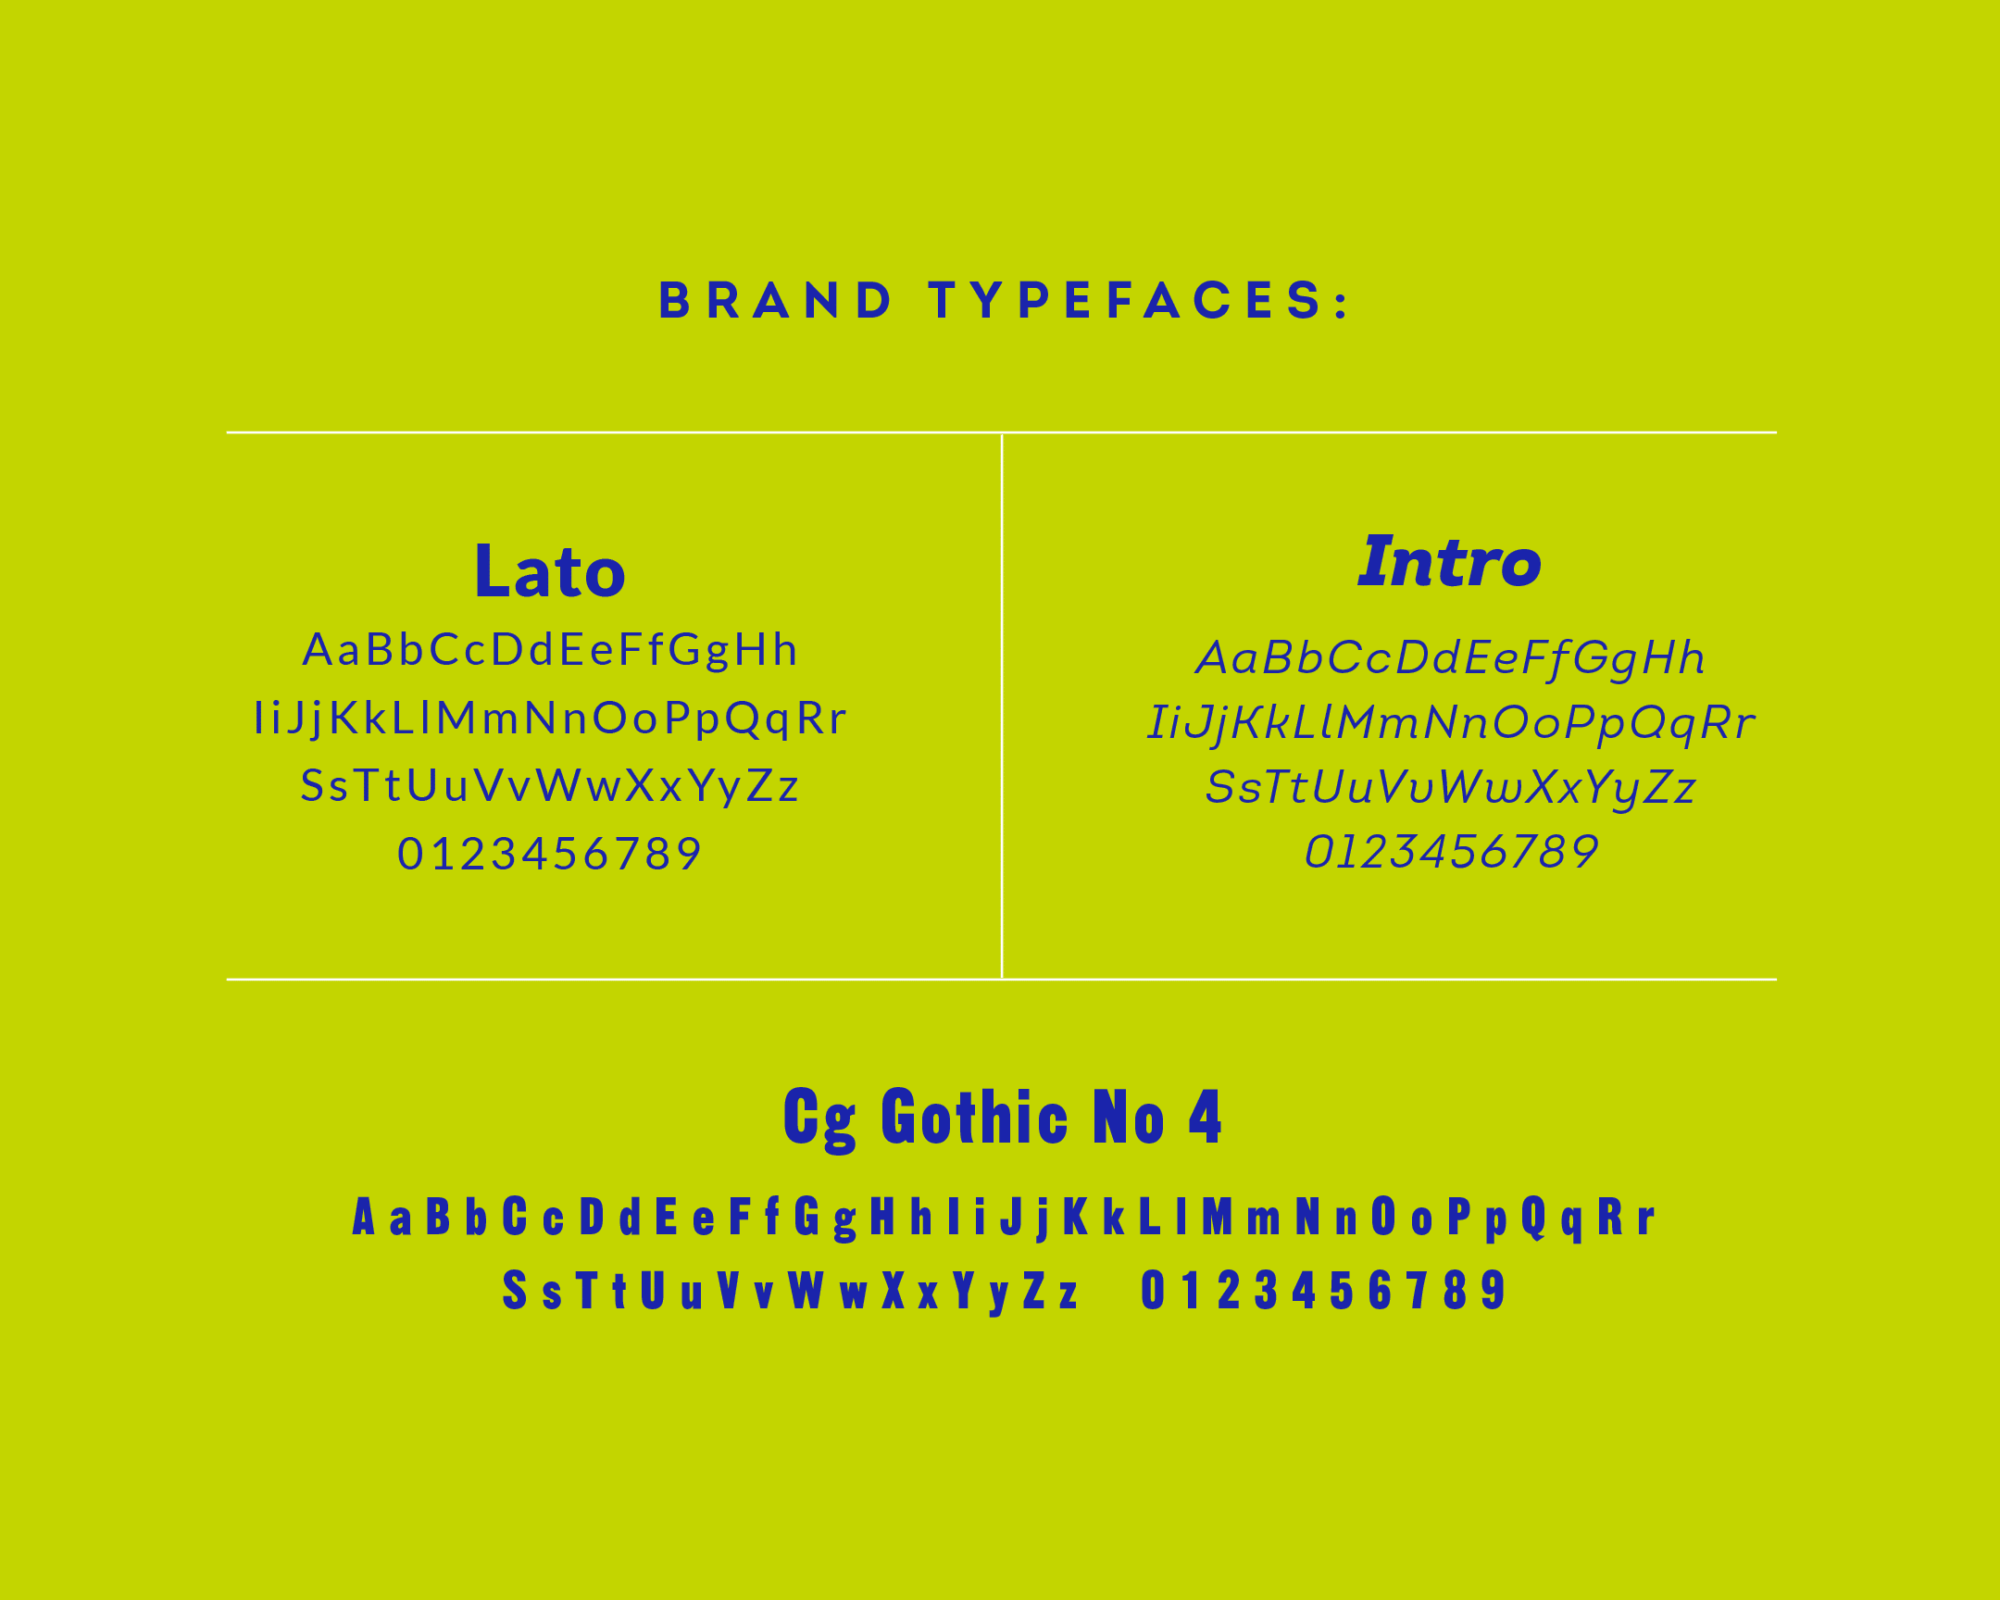 MeWash brand typefaces